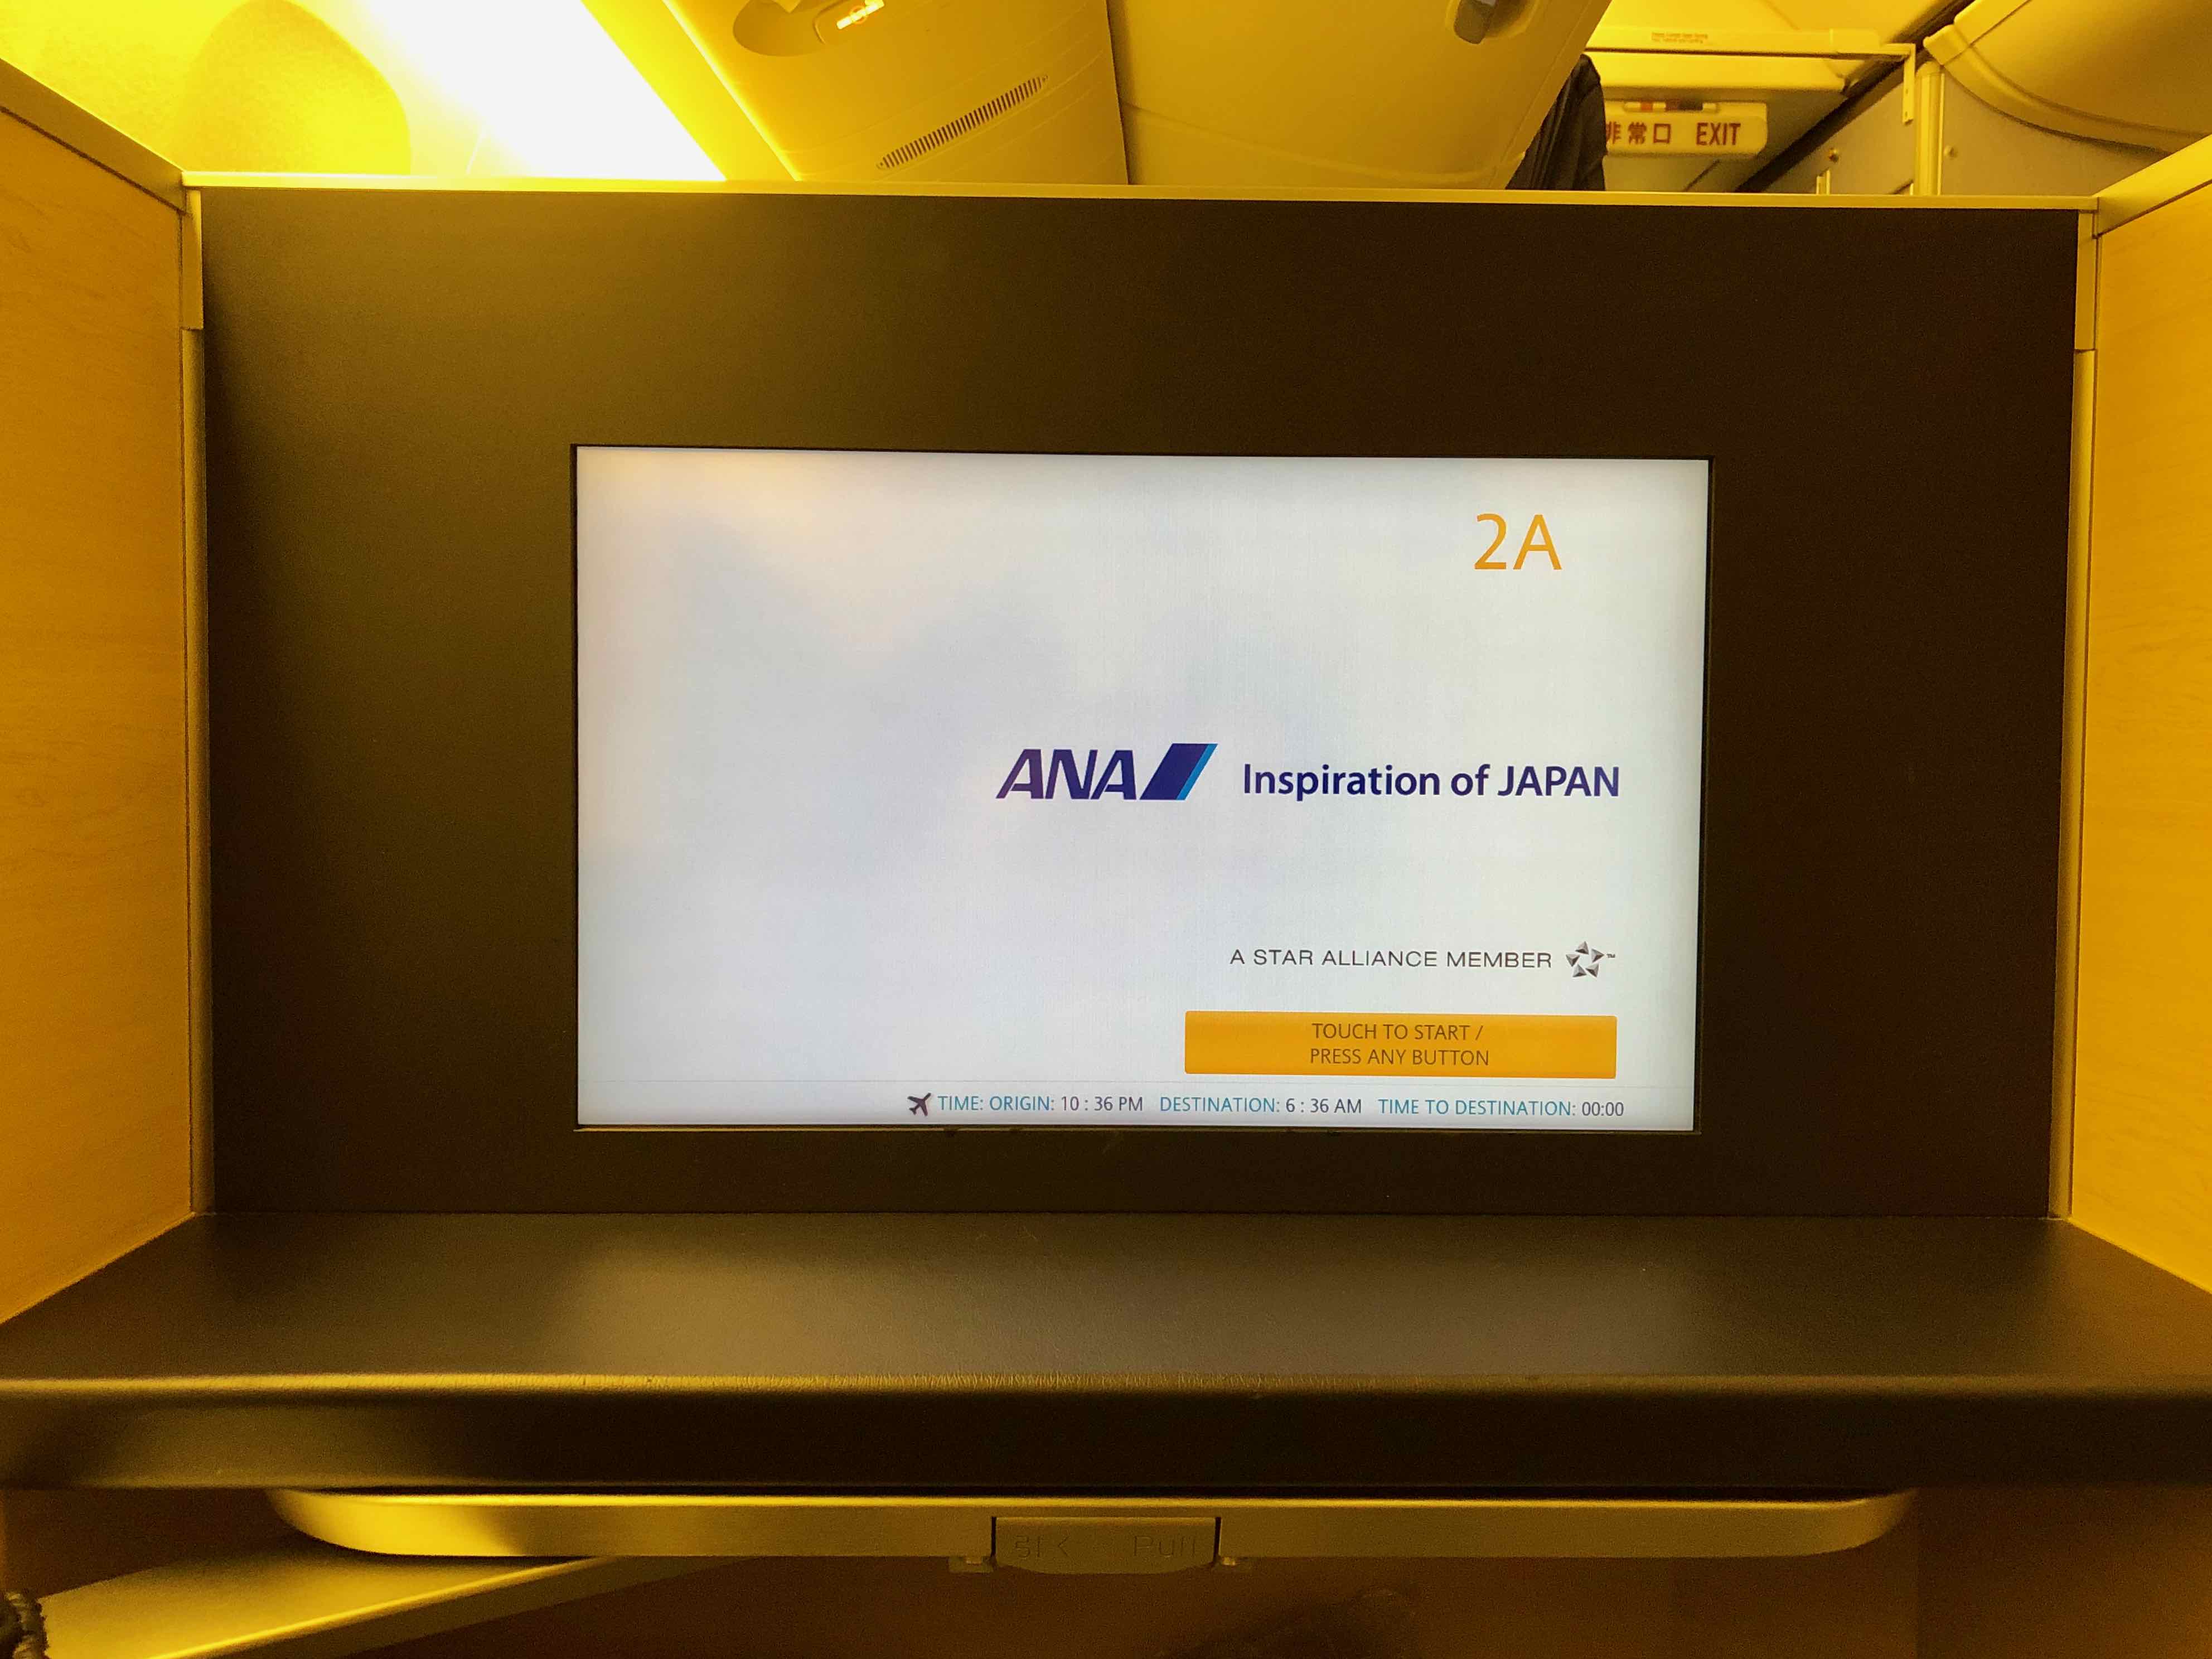 ANA 777 First Class inflight entertainment